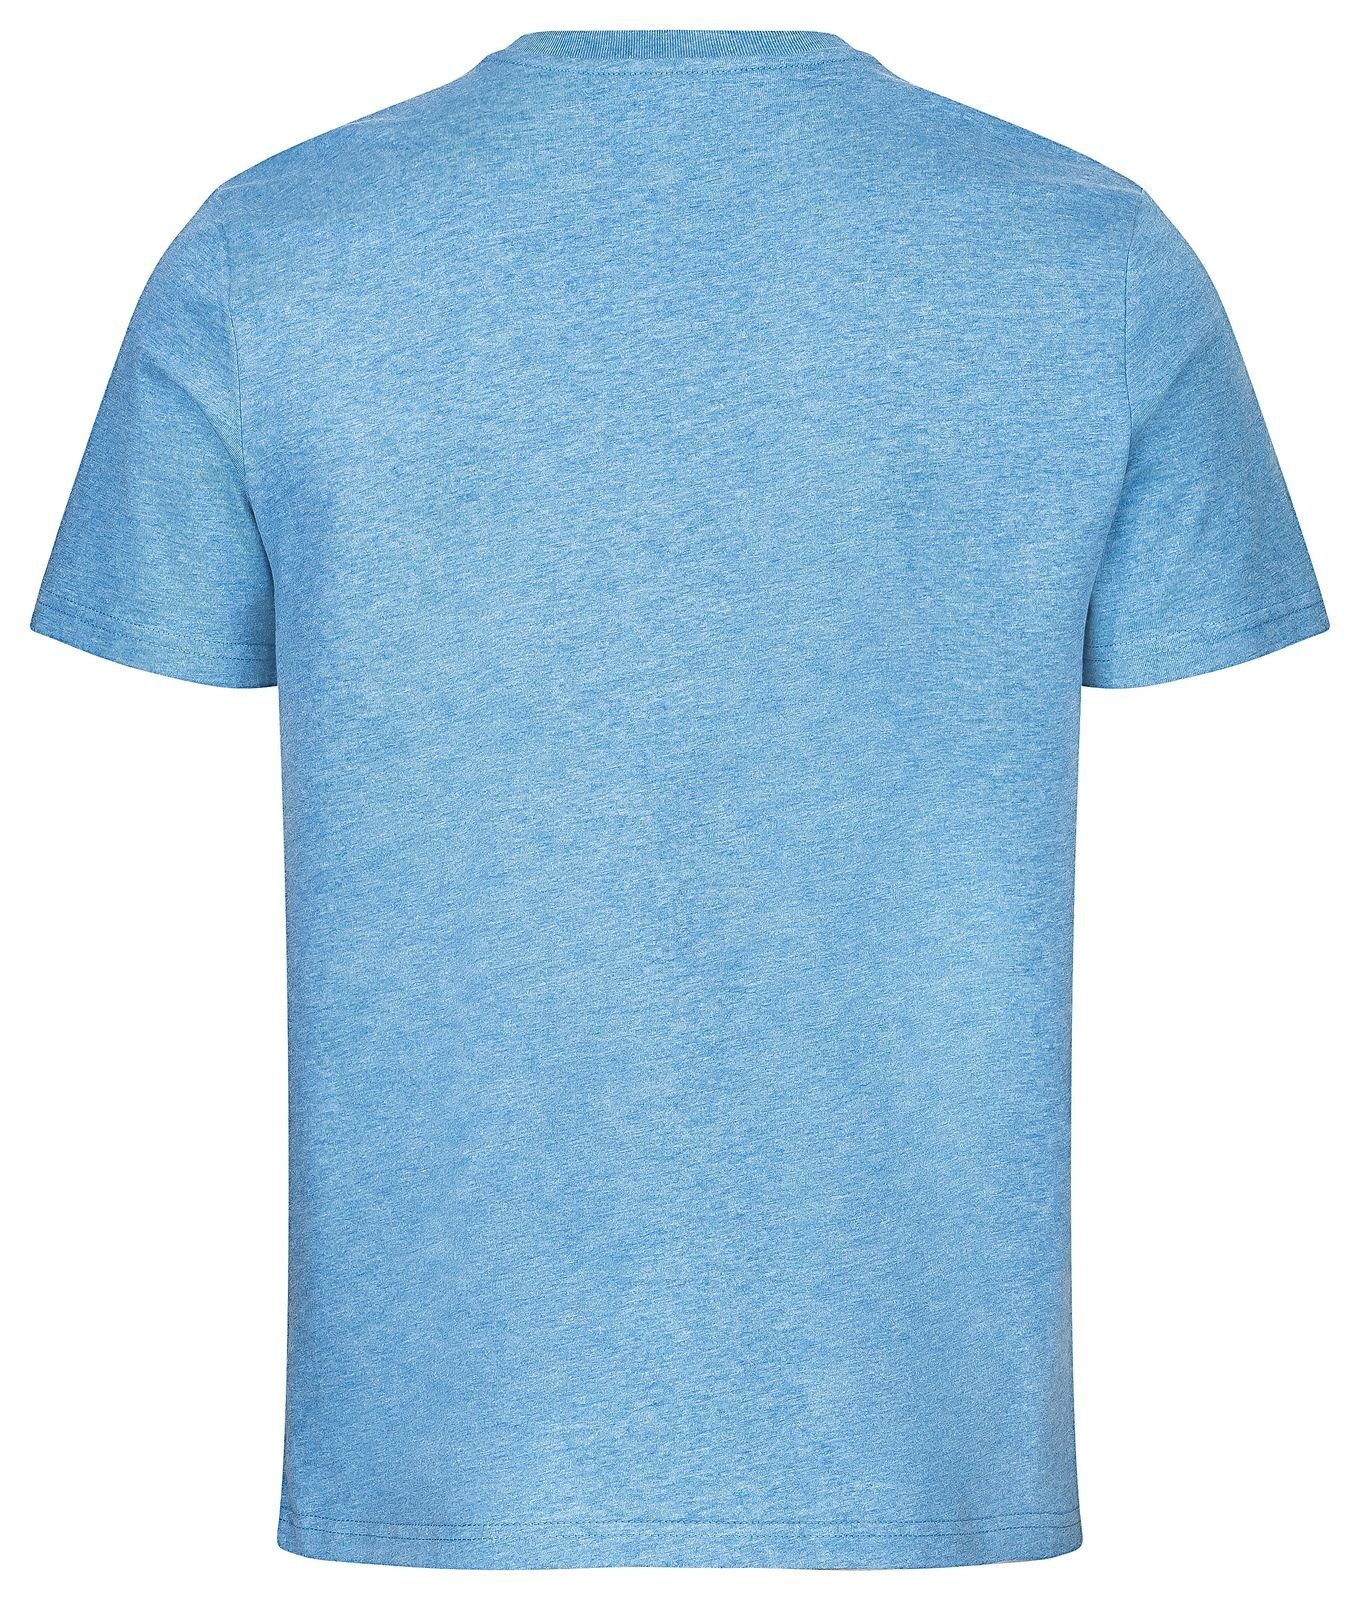 Gradnetz T-Shirt basic leather & fair blau Biobaumwolle meliert unisex 100% nachhaltig